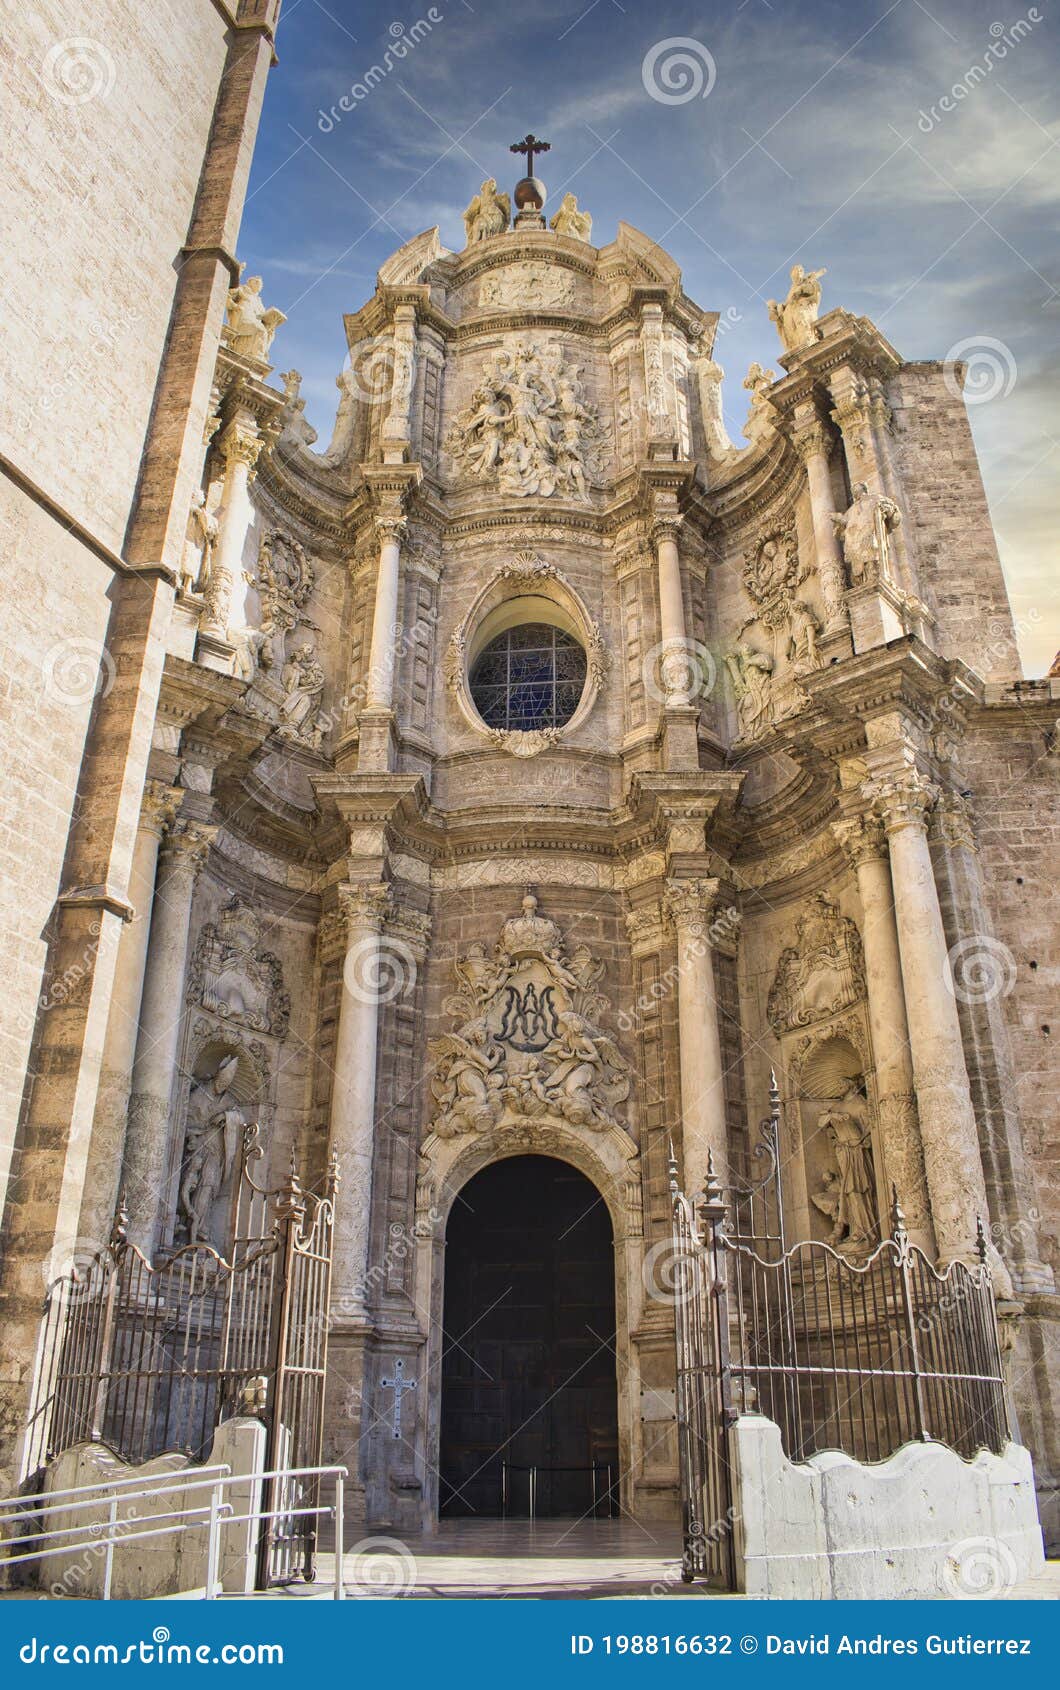 door of los hierros and baroque facade of the cathedral of valencia